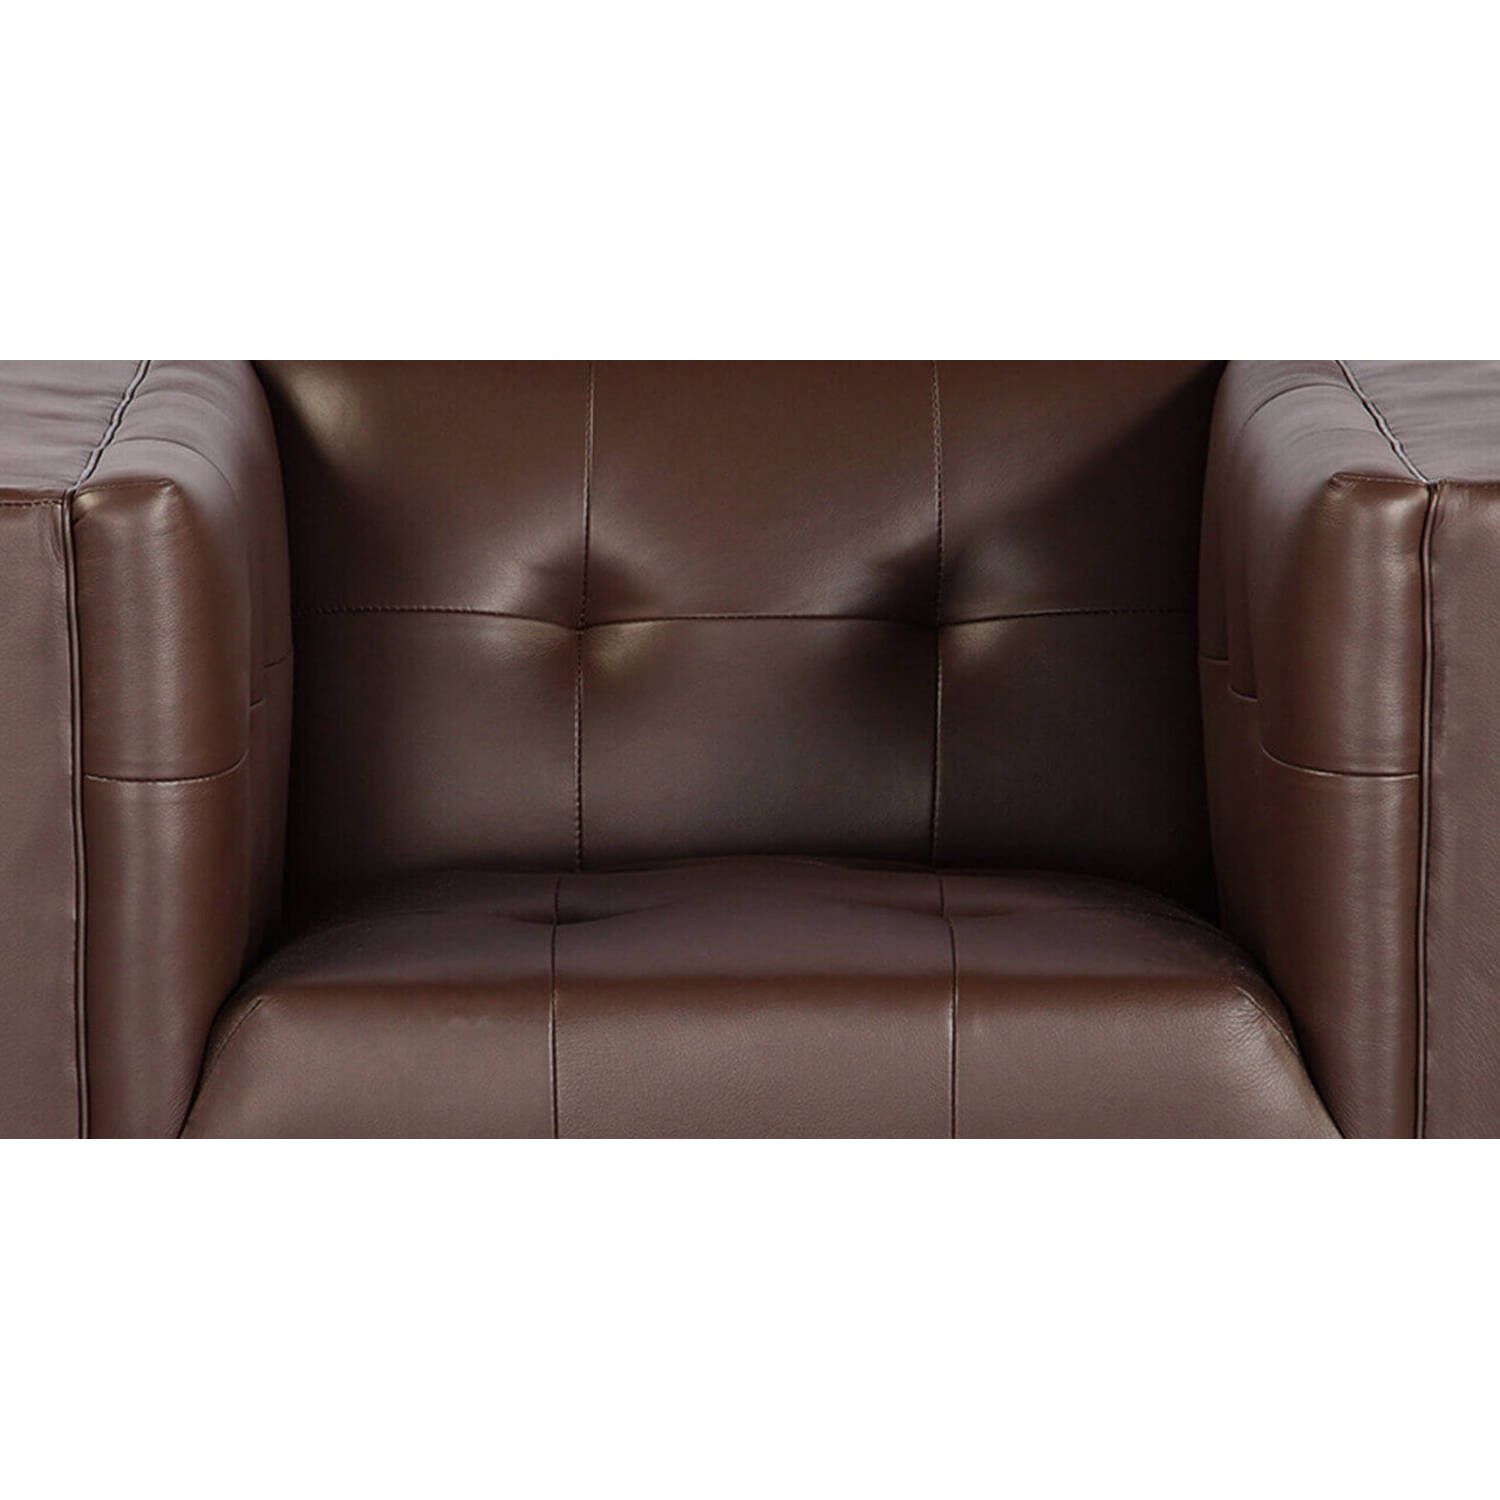 Кресло Harrison, коричневое, кожаное